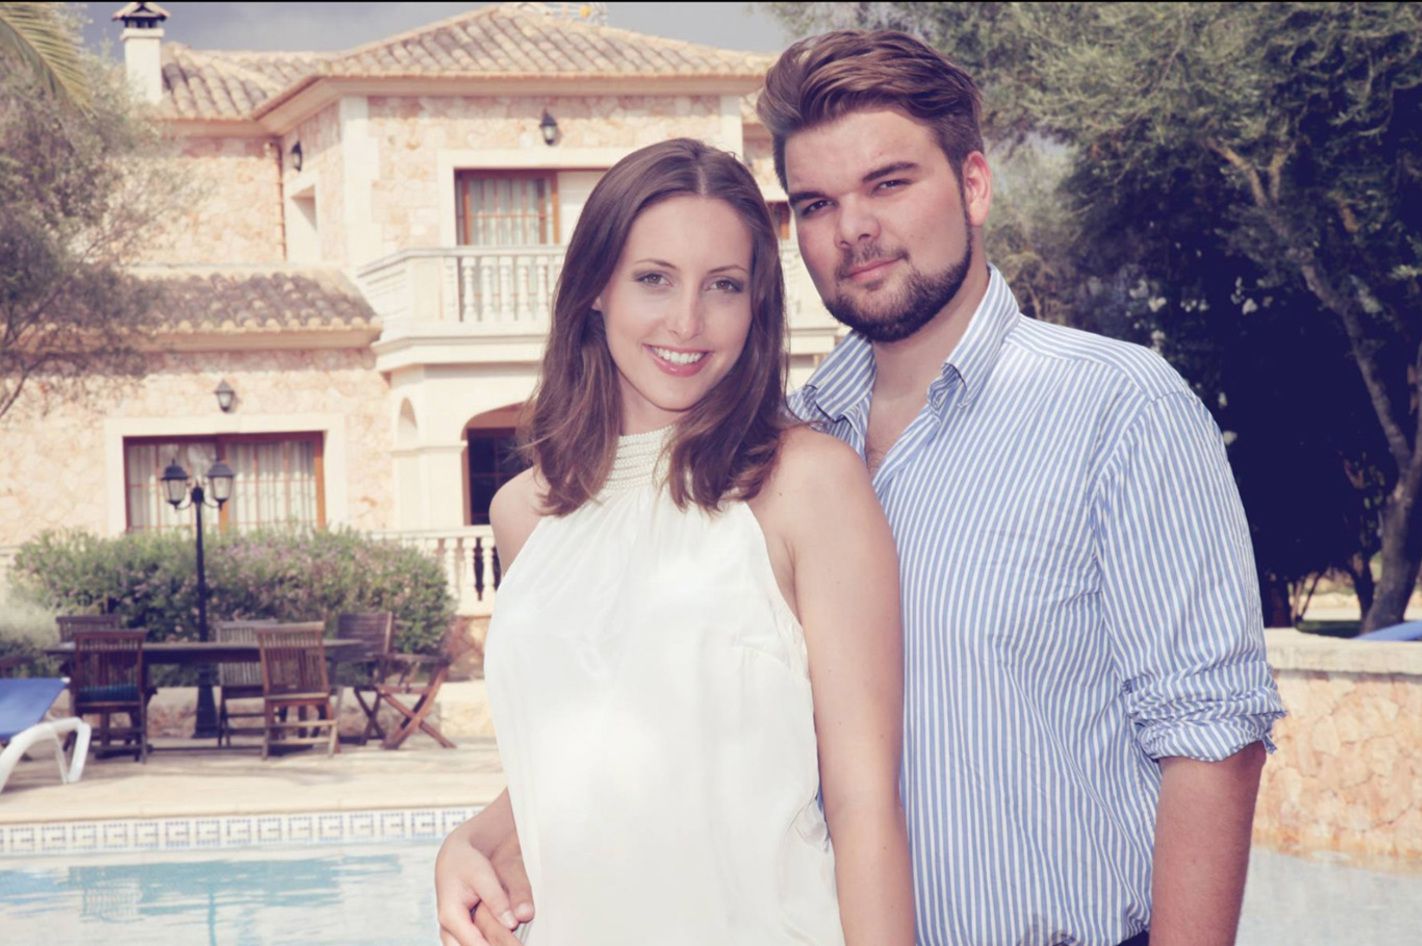 Fotoshooting für Paare oder Familien auf Mallorca